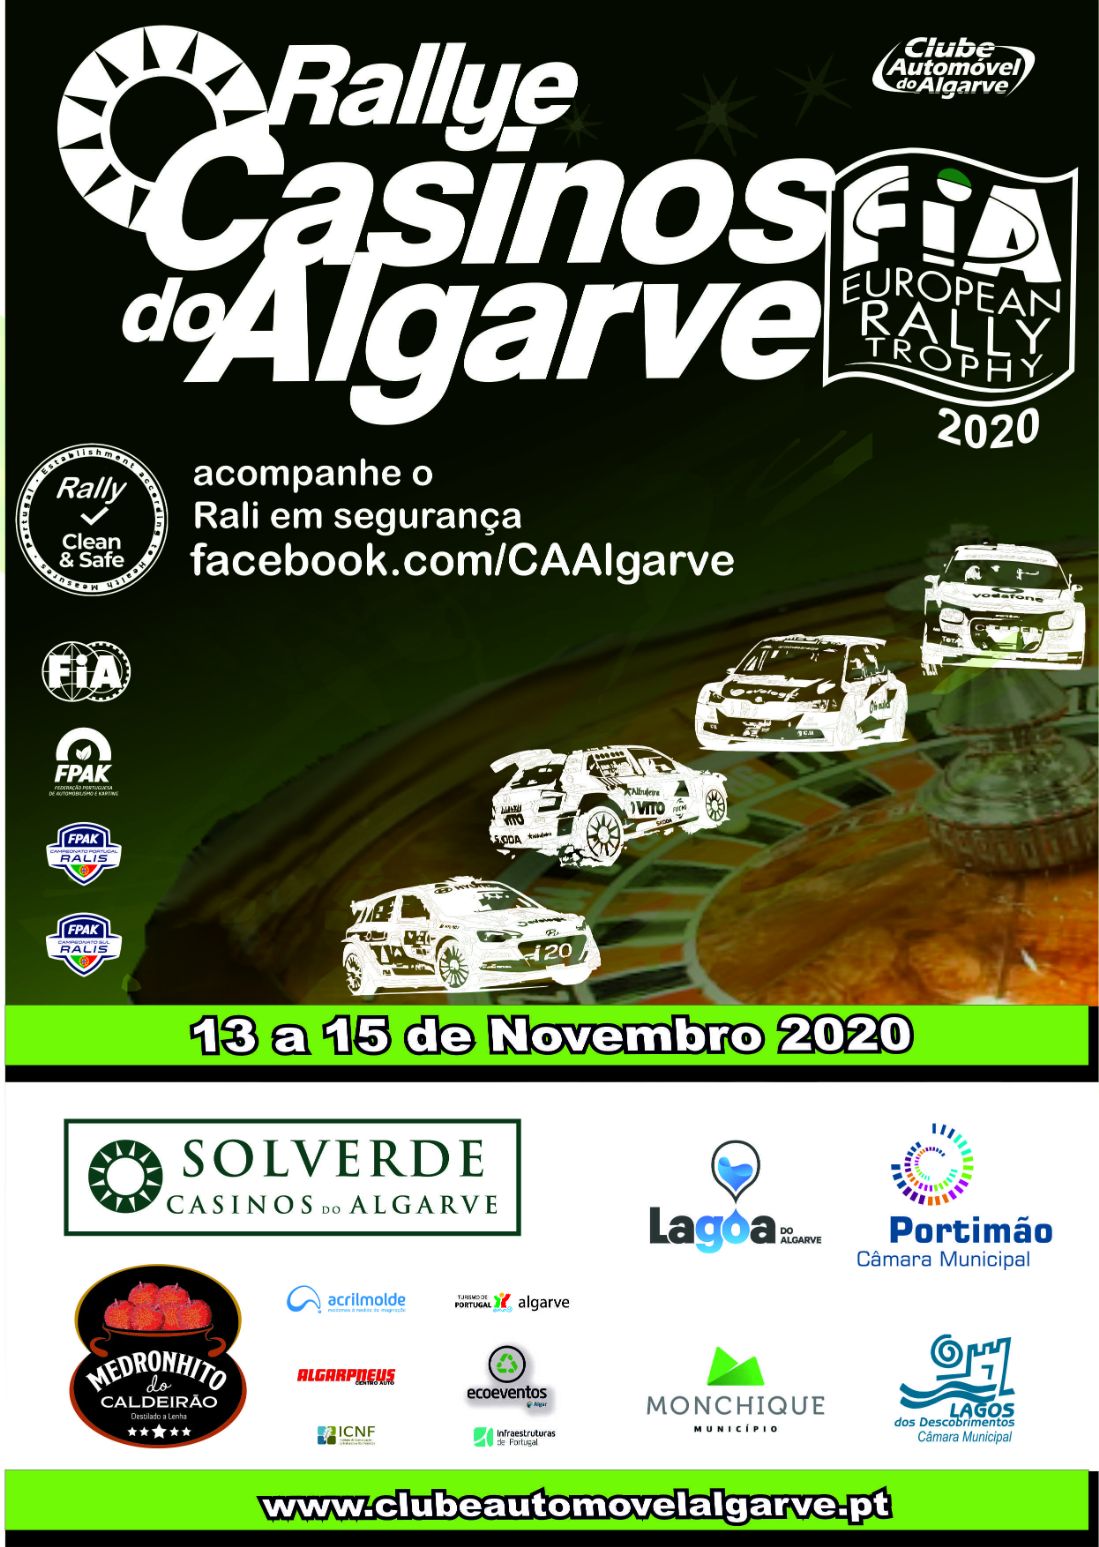 Estado de emergência obriga a adiamento do Rallye Casinos do Algarve